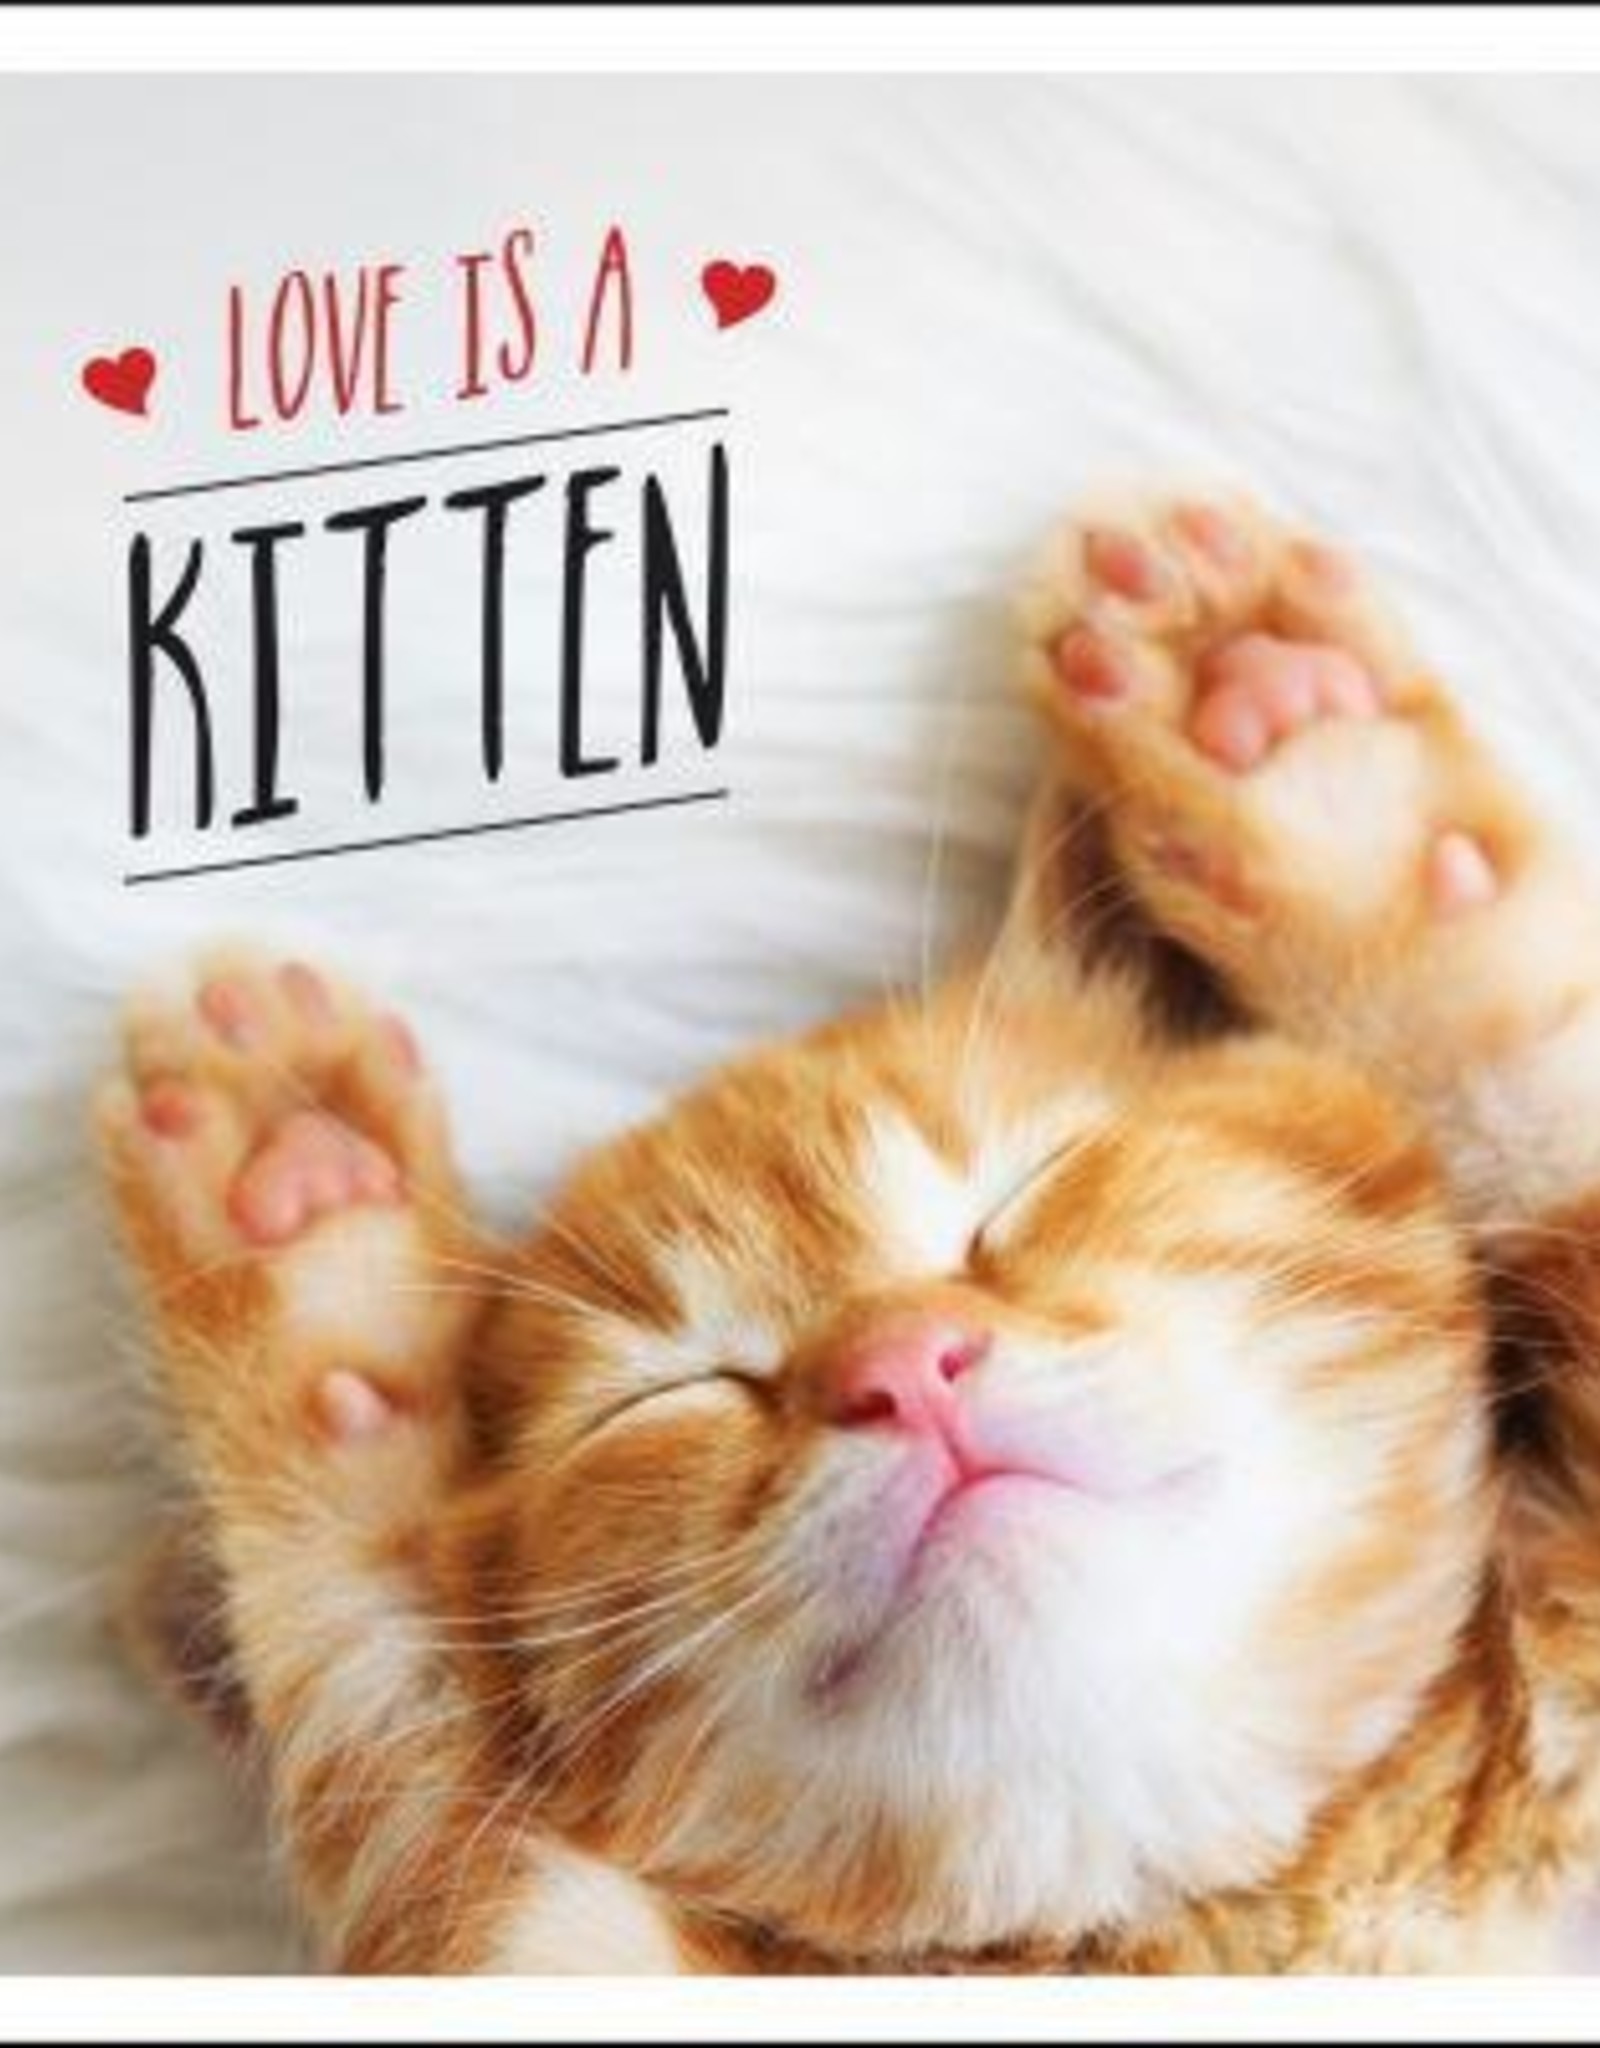 LOVE IS A KITTEN